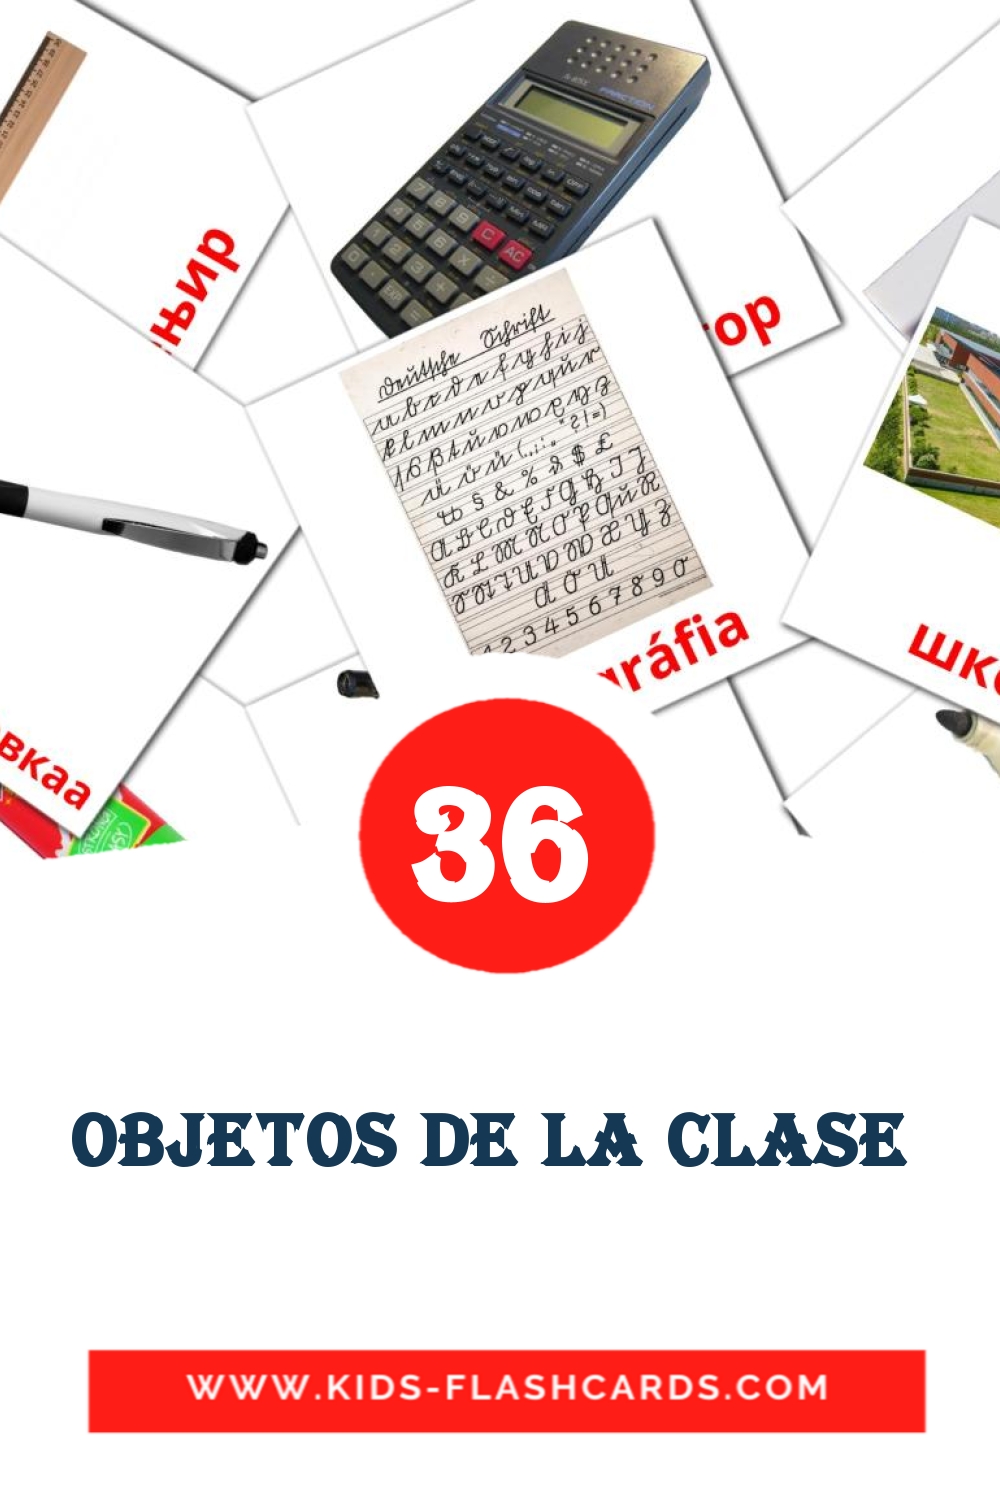 36 cartes illustrées de objetos de la clase  pour la maternelle en amharique